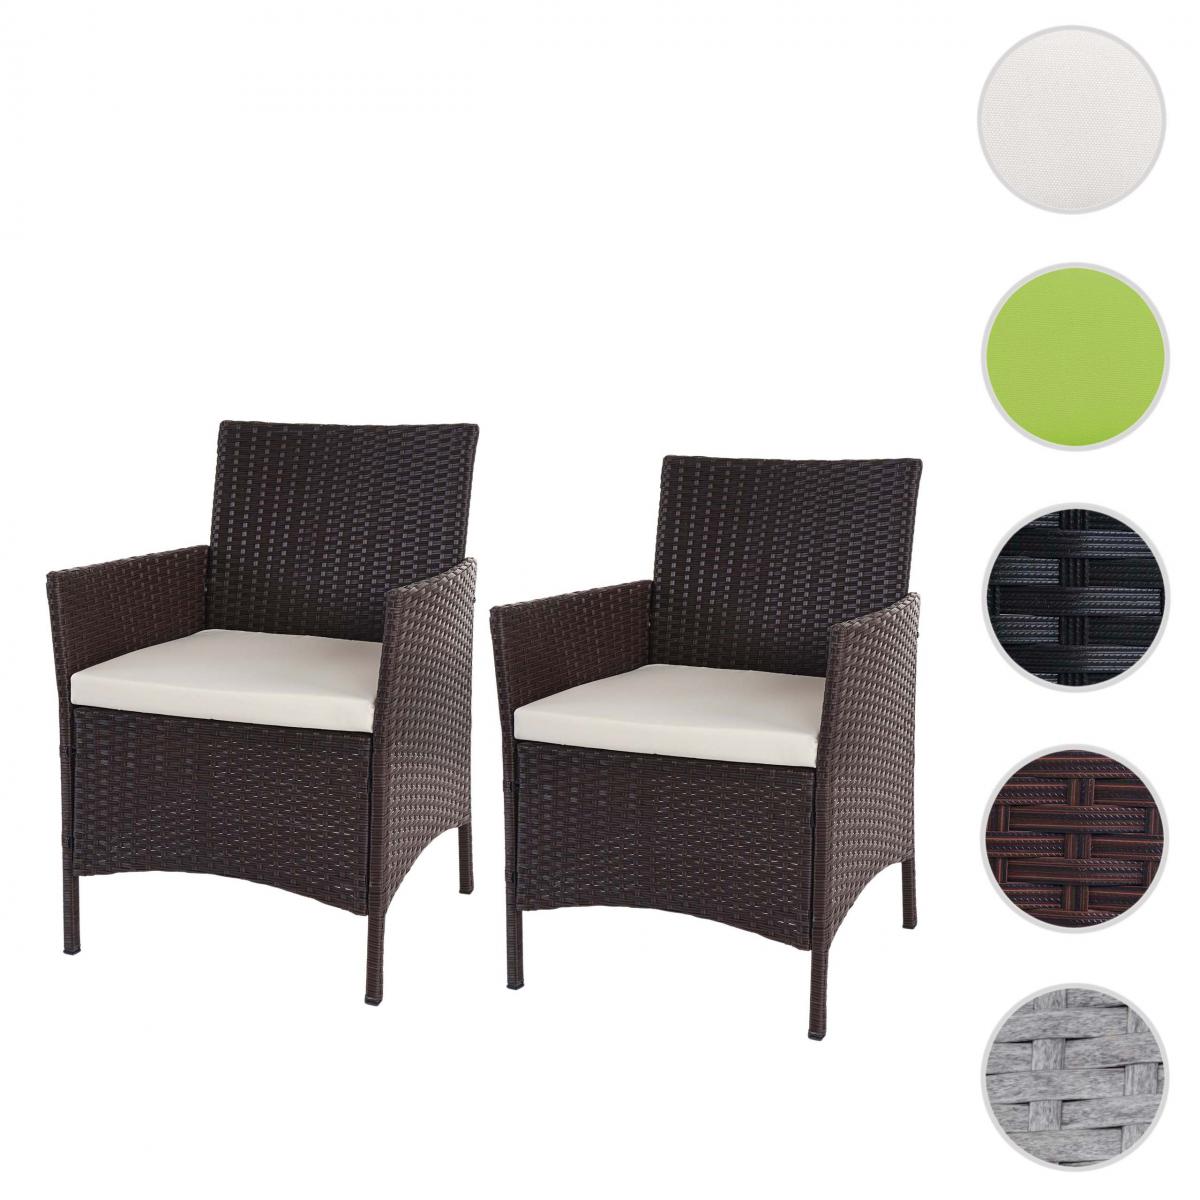 Mendler - 2x fauteuil de jardin Halden en polyrotin, fauteuil en osier ~ marron chiné, coussin crème - Chaises de jardin